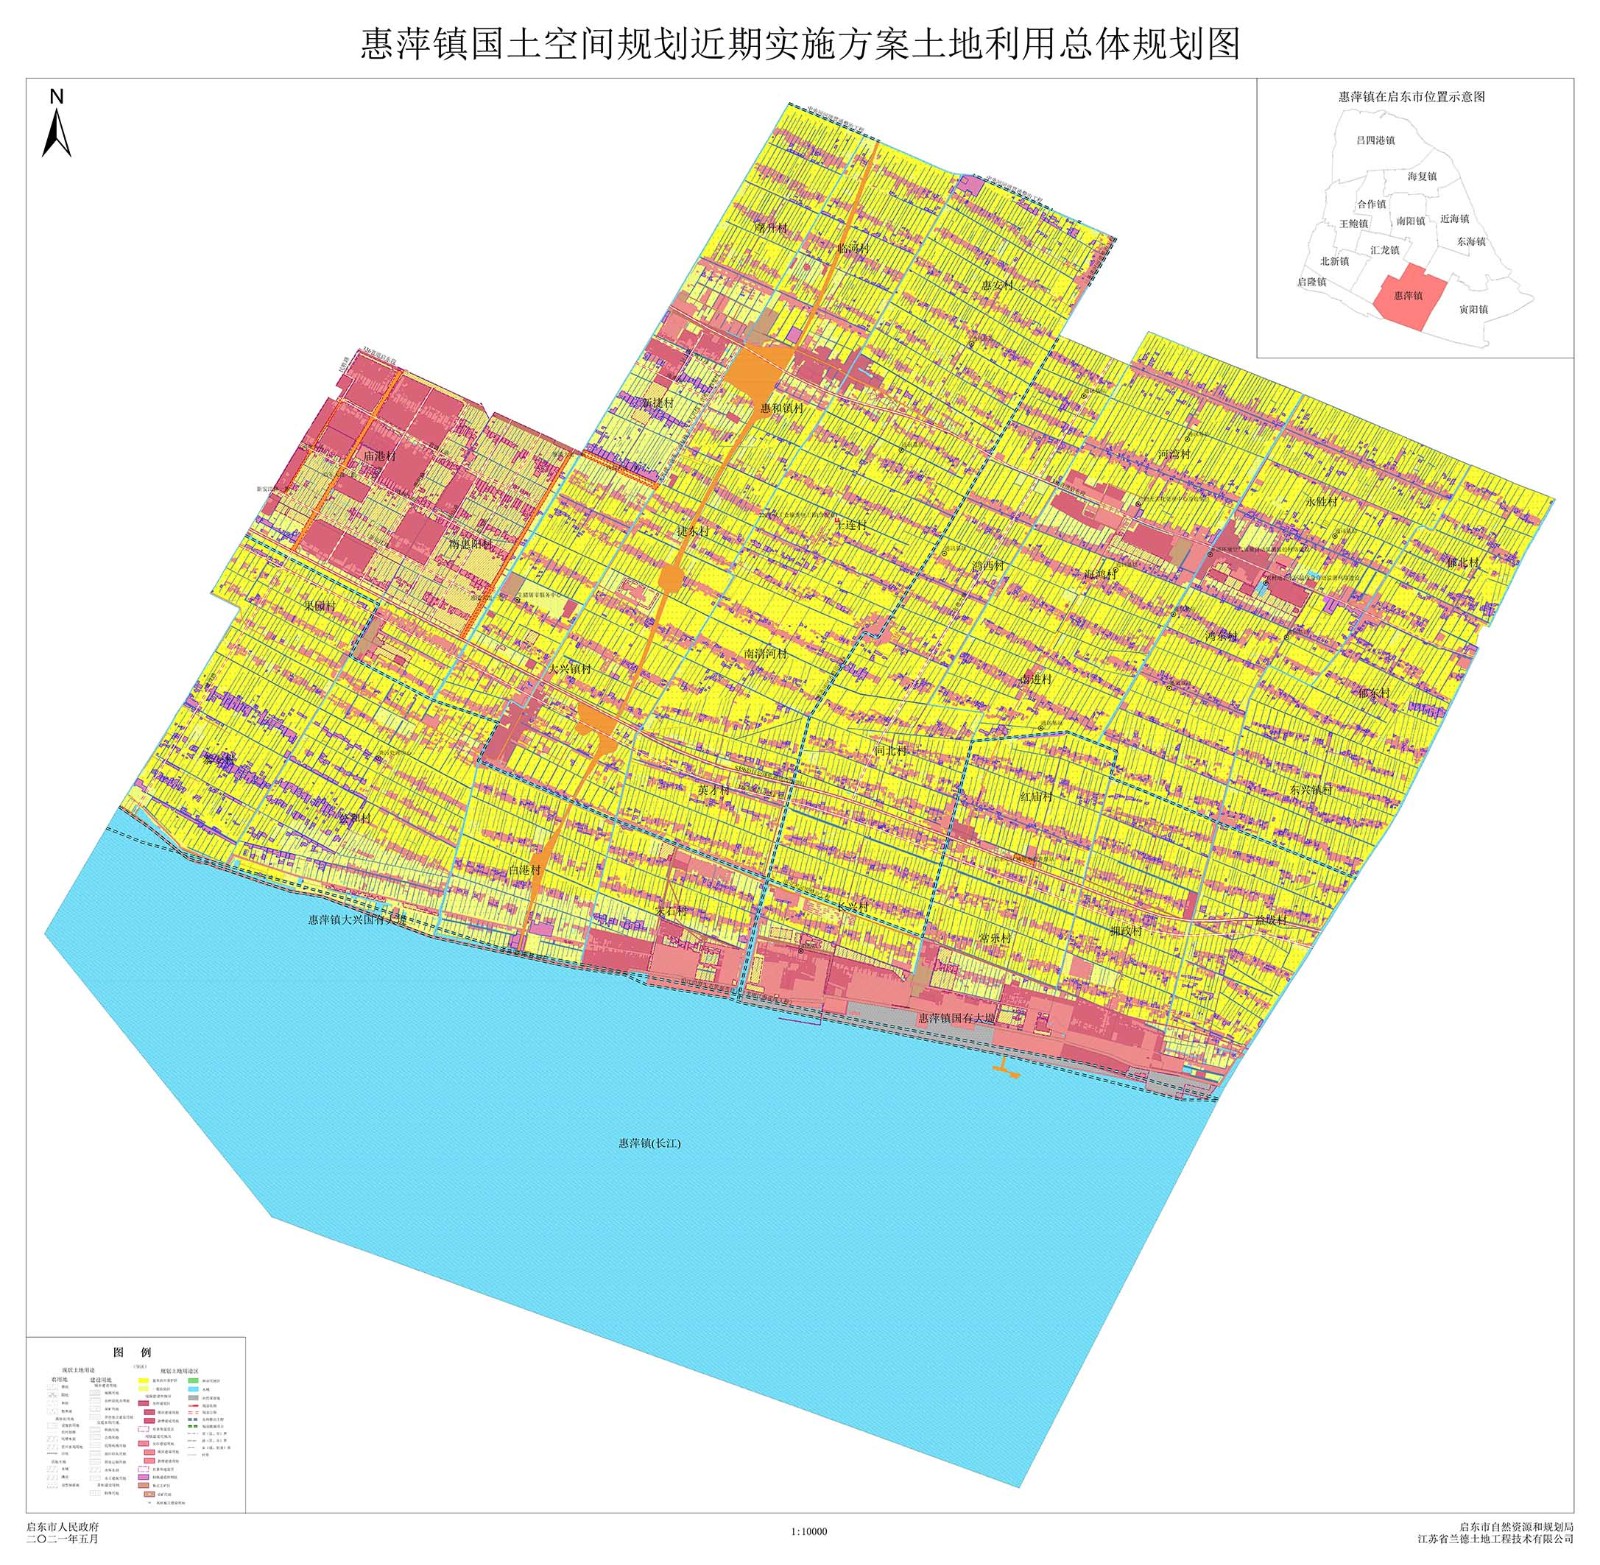 惠萍镇国土空间规划近期实施方案土地利用总体规划图.jpg